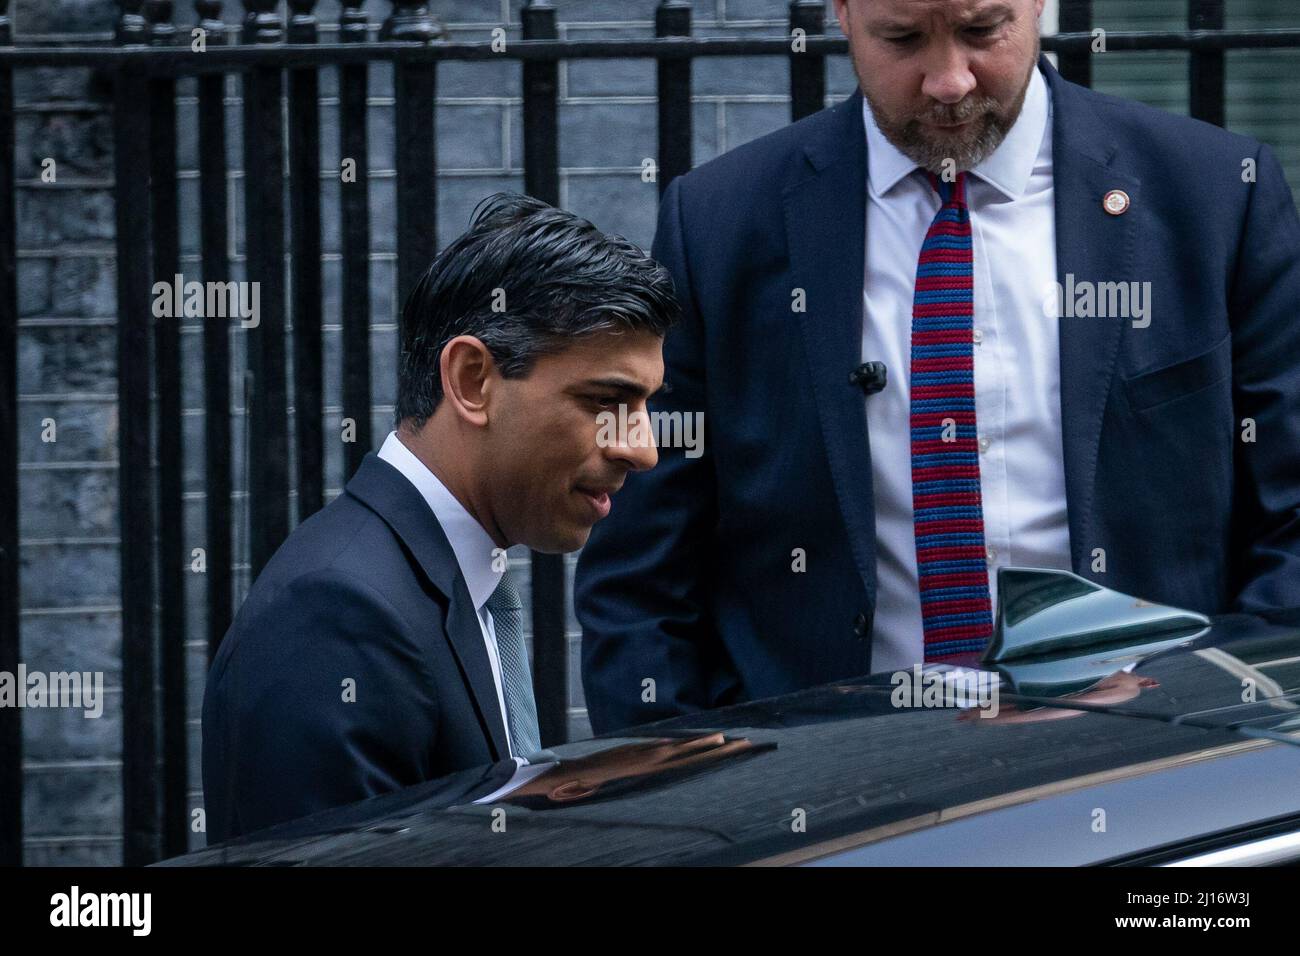 Der Schatzkanzler Rishi Sunak verlässt die Downing Street 11, als er zum Unterhaus in London aufbricht, um seine Frühjahrserklärung abzuliefern. Bilddatum: Mittwoch, 23. März 2022. Stockfoto